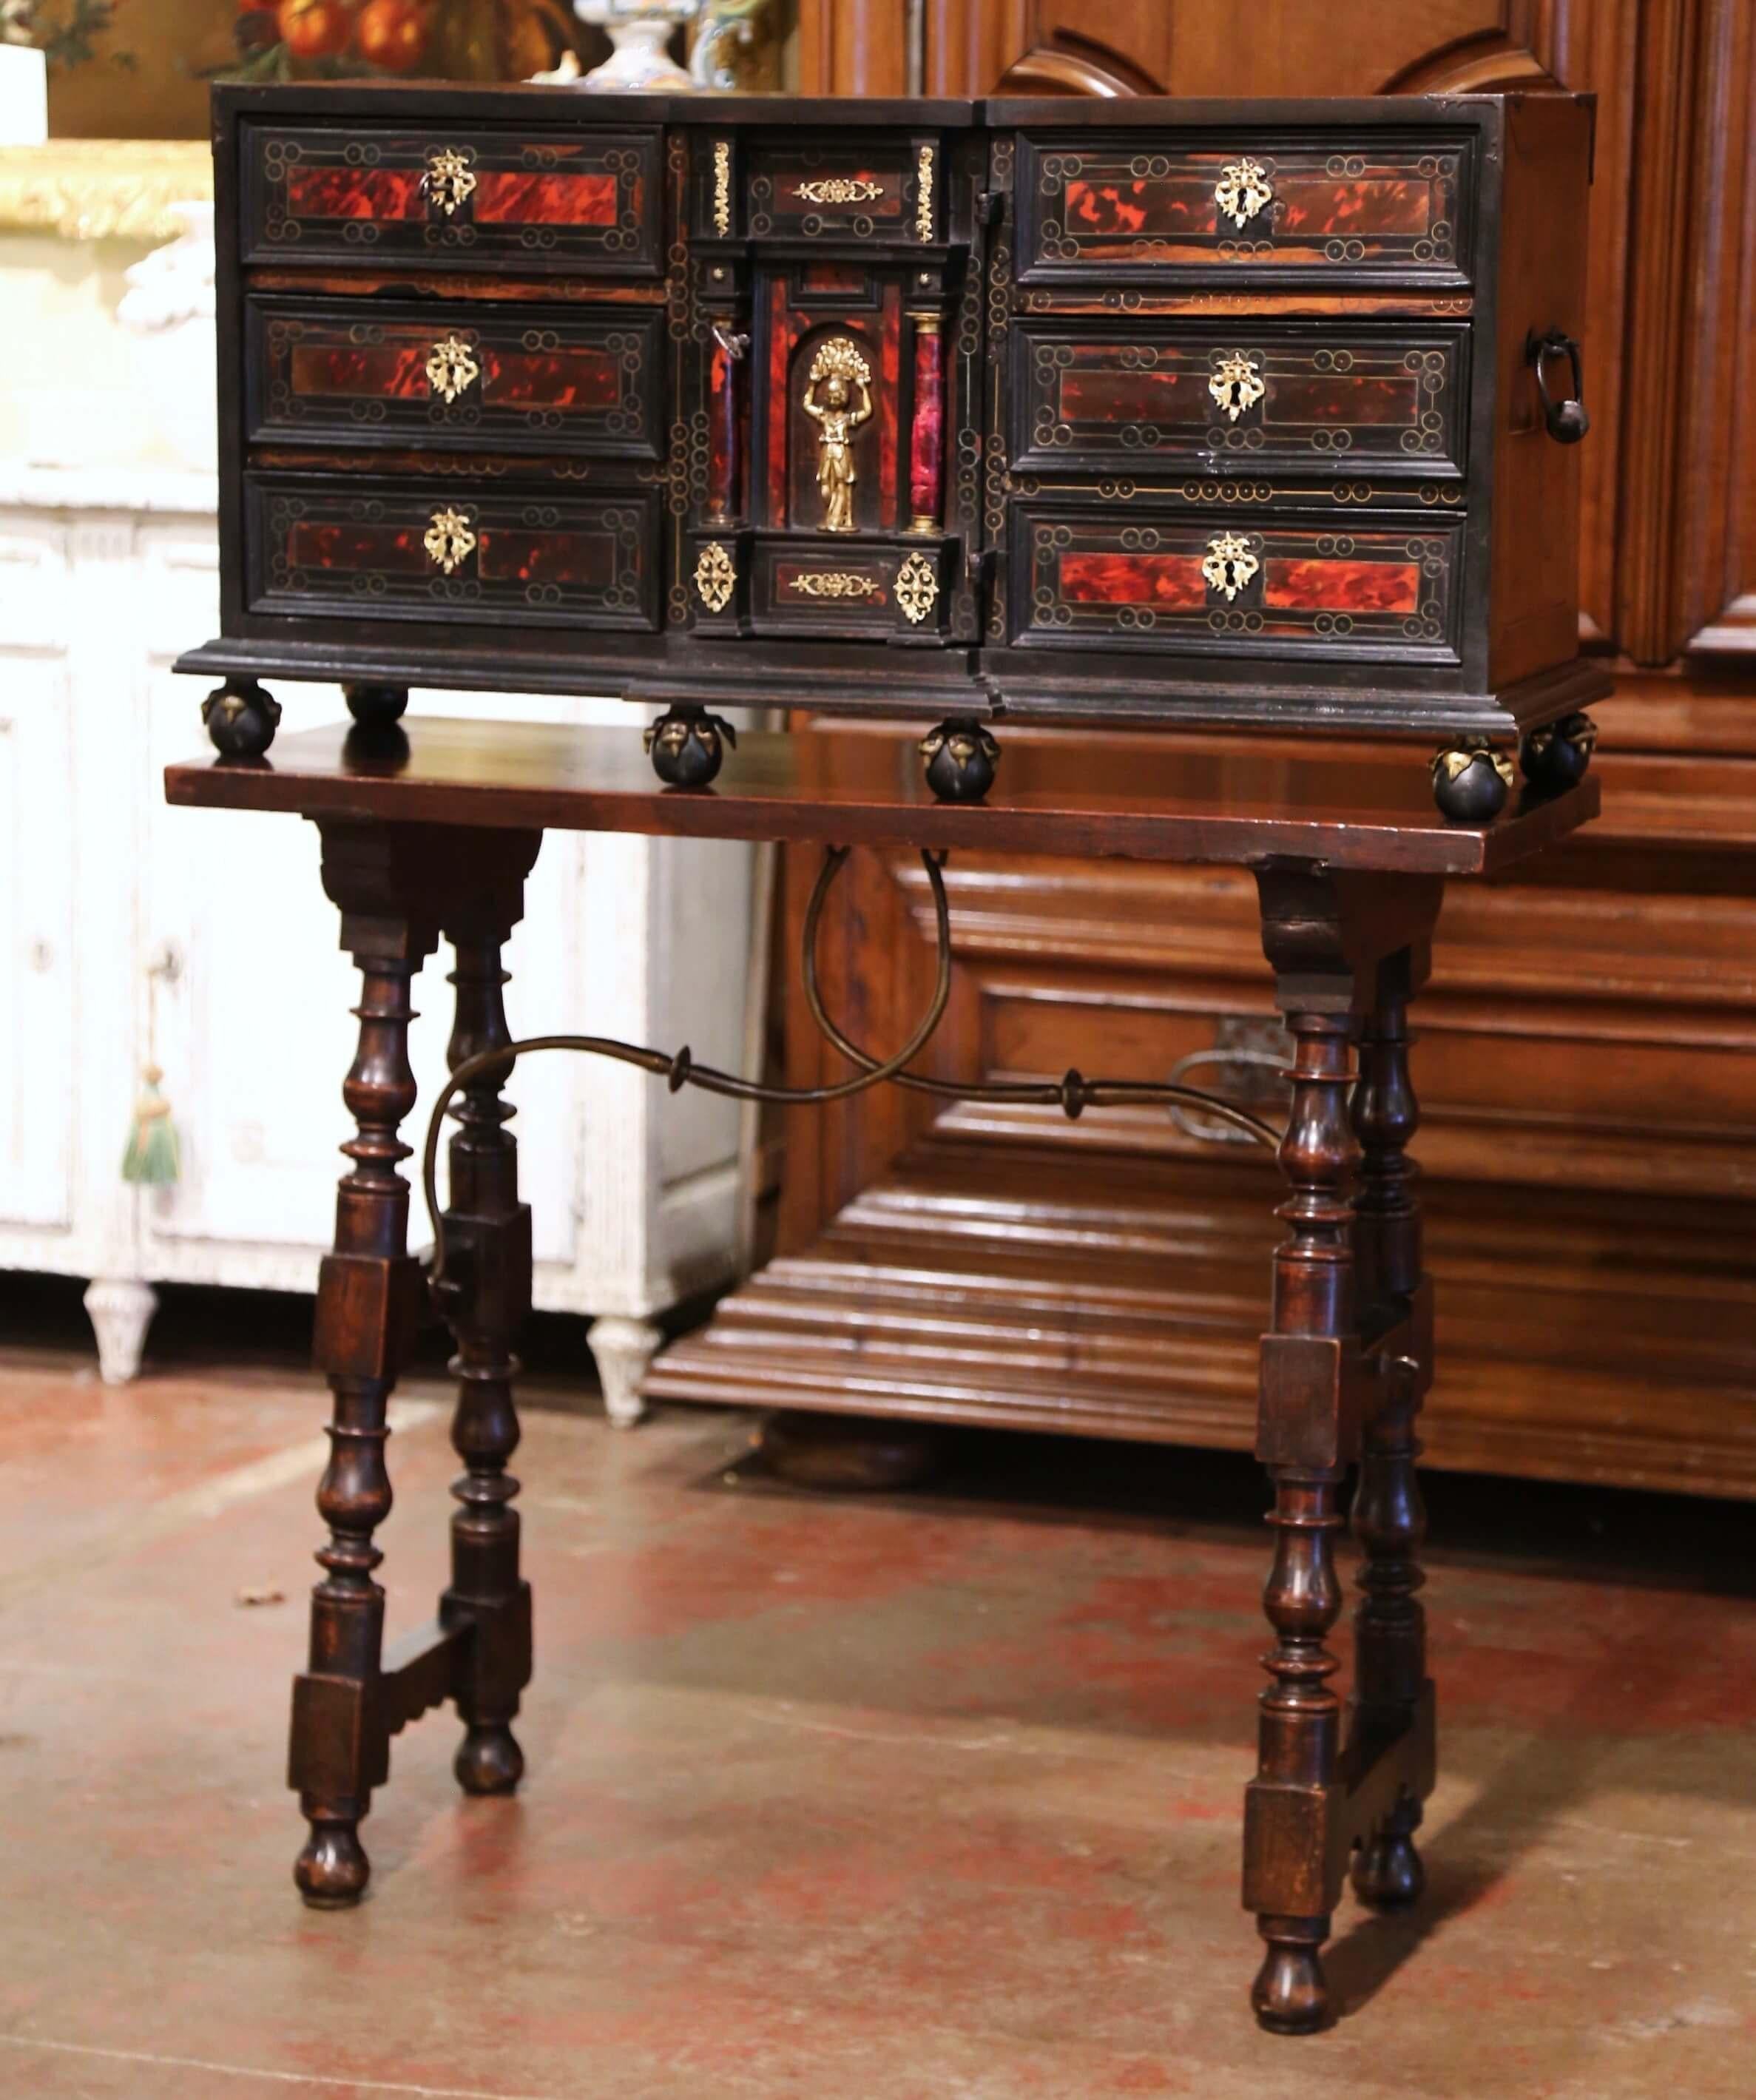 Cet élégant bargueno ou vargueno ancien à deux pièces a été fabriqué en Espagne vers 1820. Le meuble repose sur des pieds ronds et sur une base de table avec des pieds tournés sculptés et agrémentés d'un châssis décoratif en fer forgé. Le meuble à